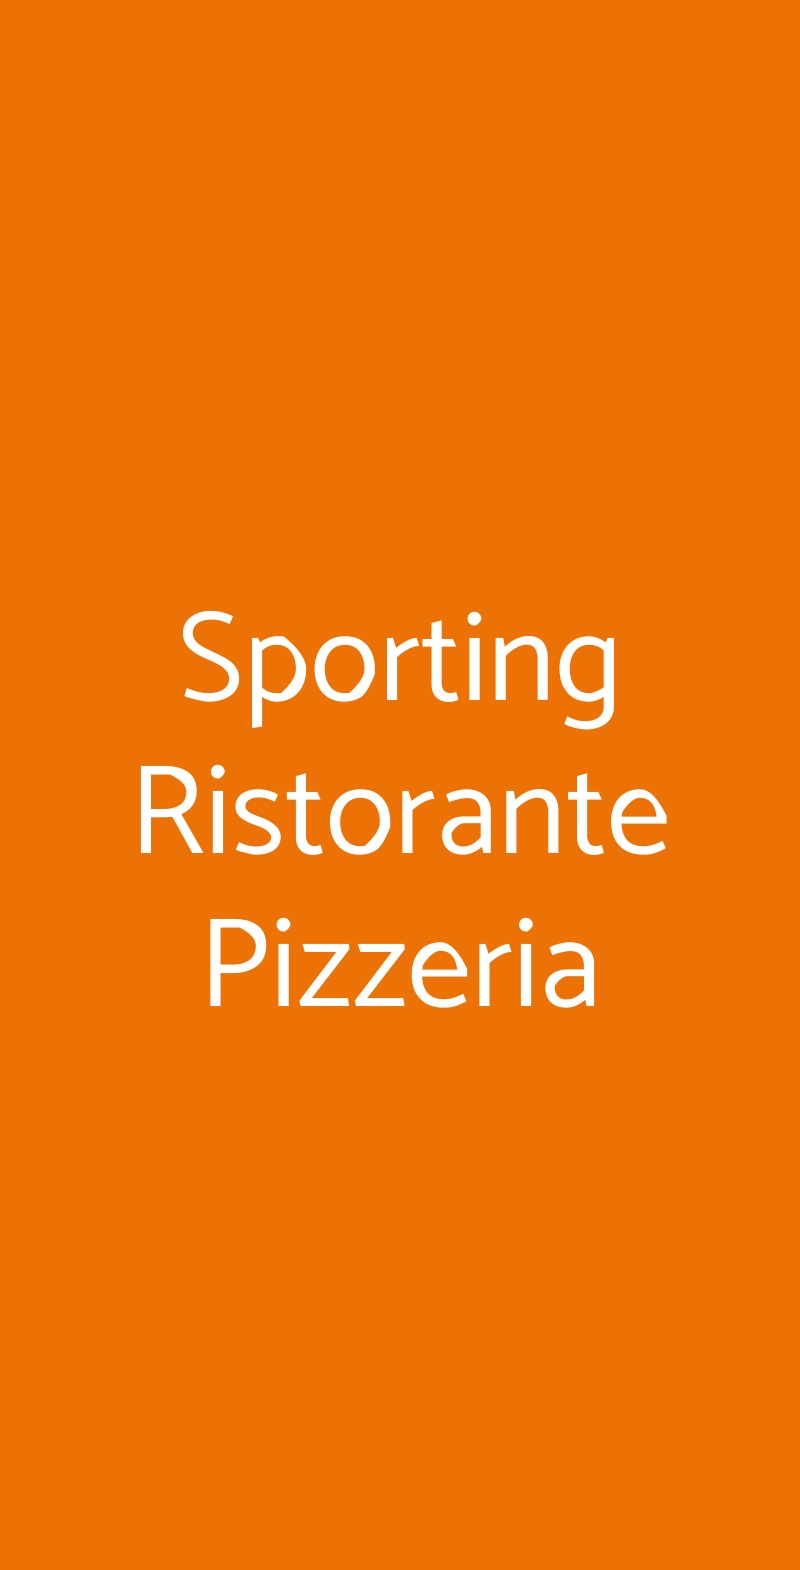 Sporting Ristorante Pizzeria Bologna menù 1 pagina